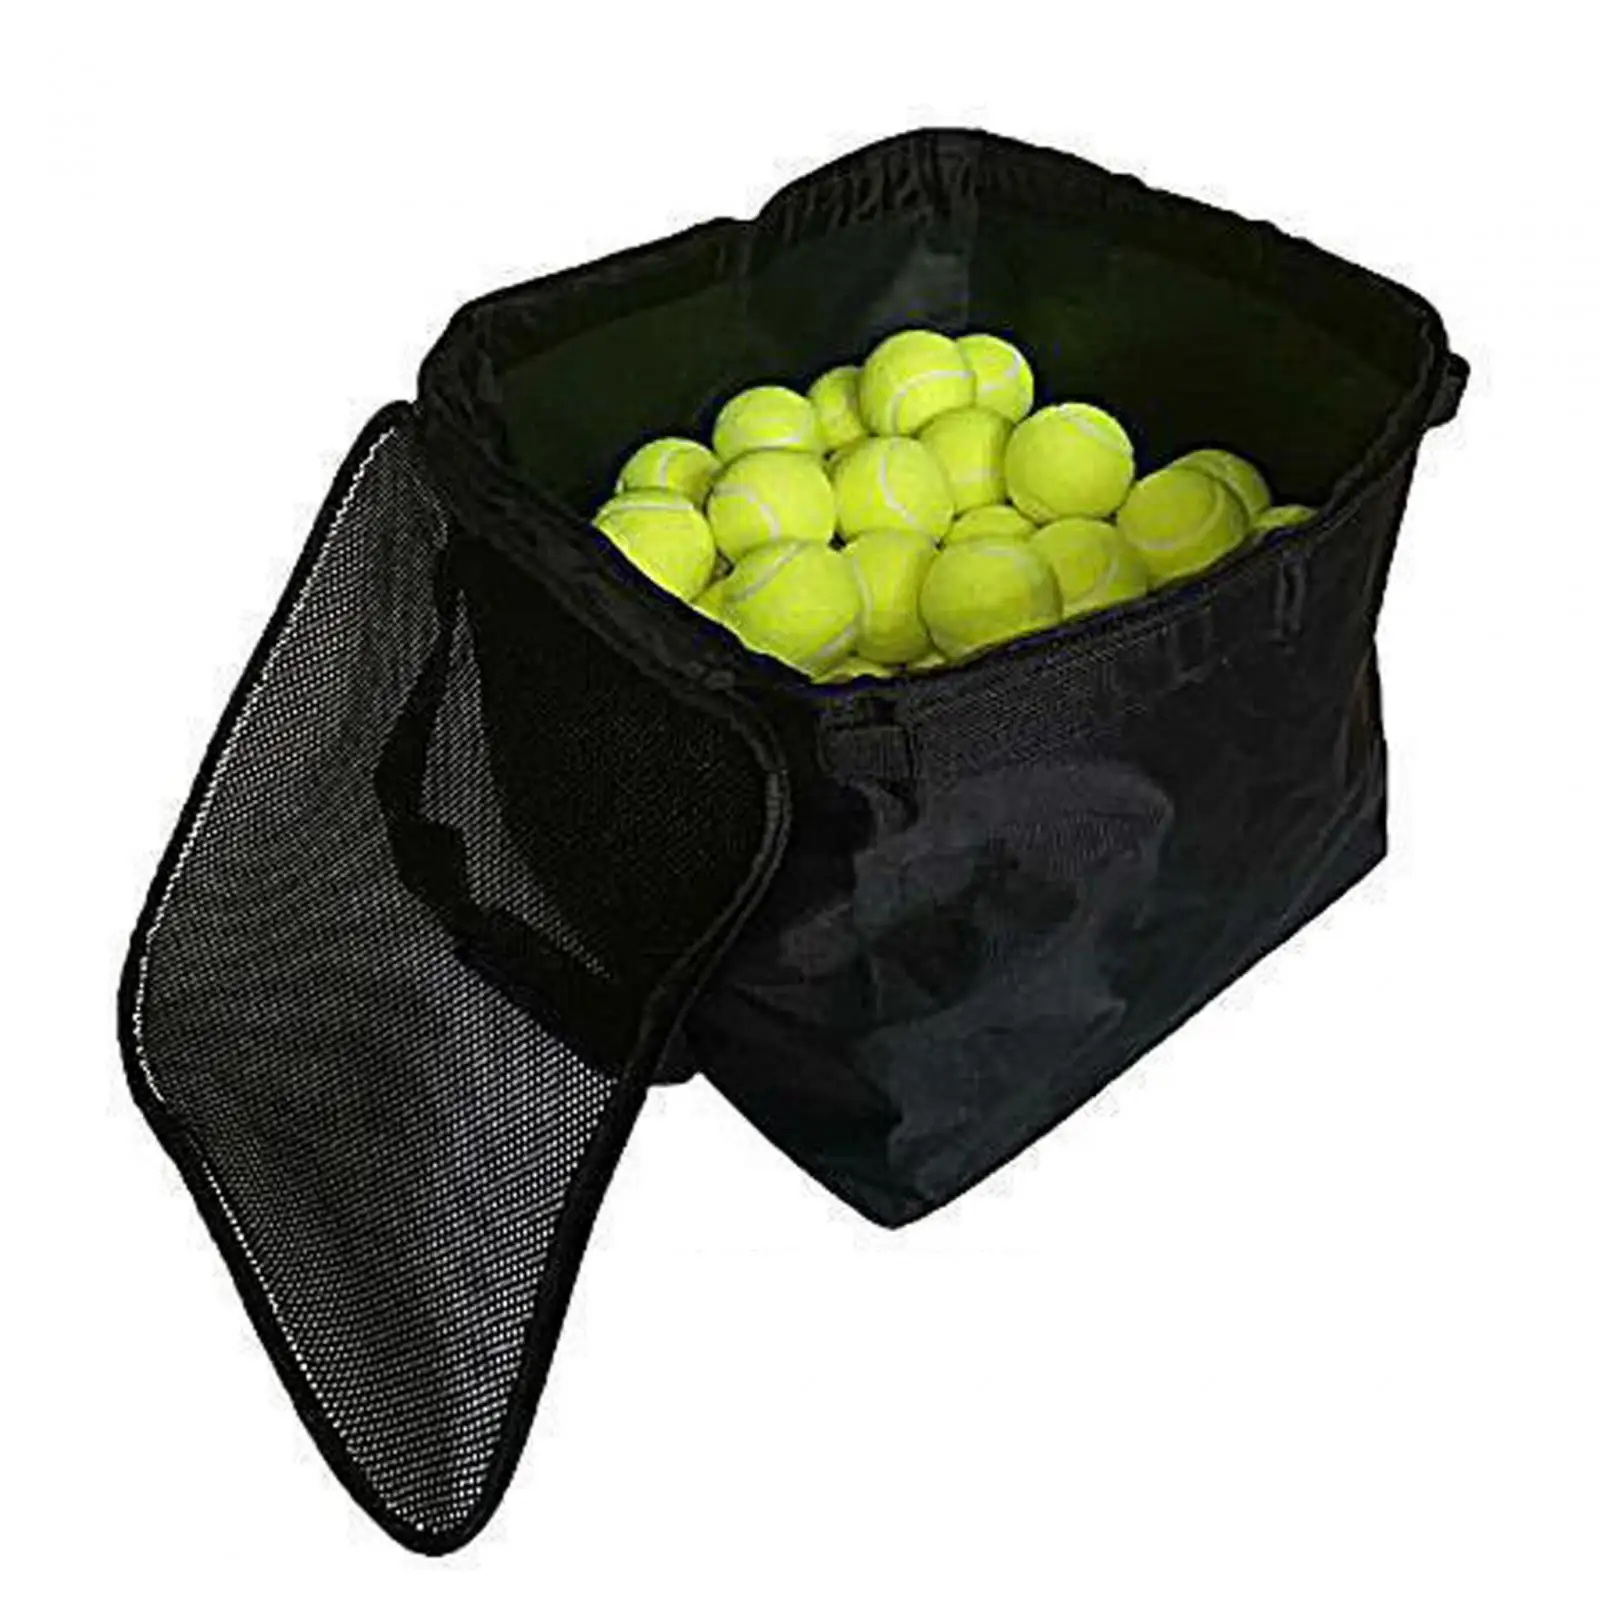 Tenis Topu Arabası Çantası Siyah Tenis Topu Sepeti Öğretim Sahası Aksesuarları